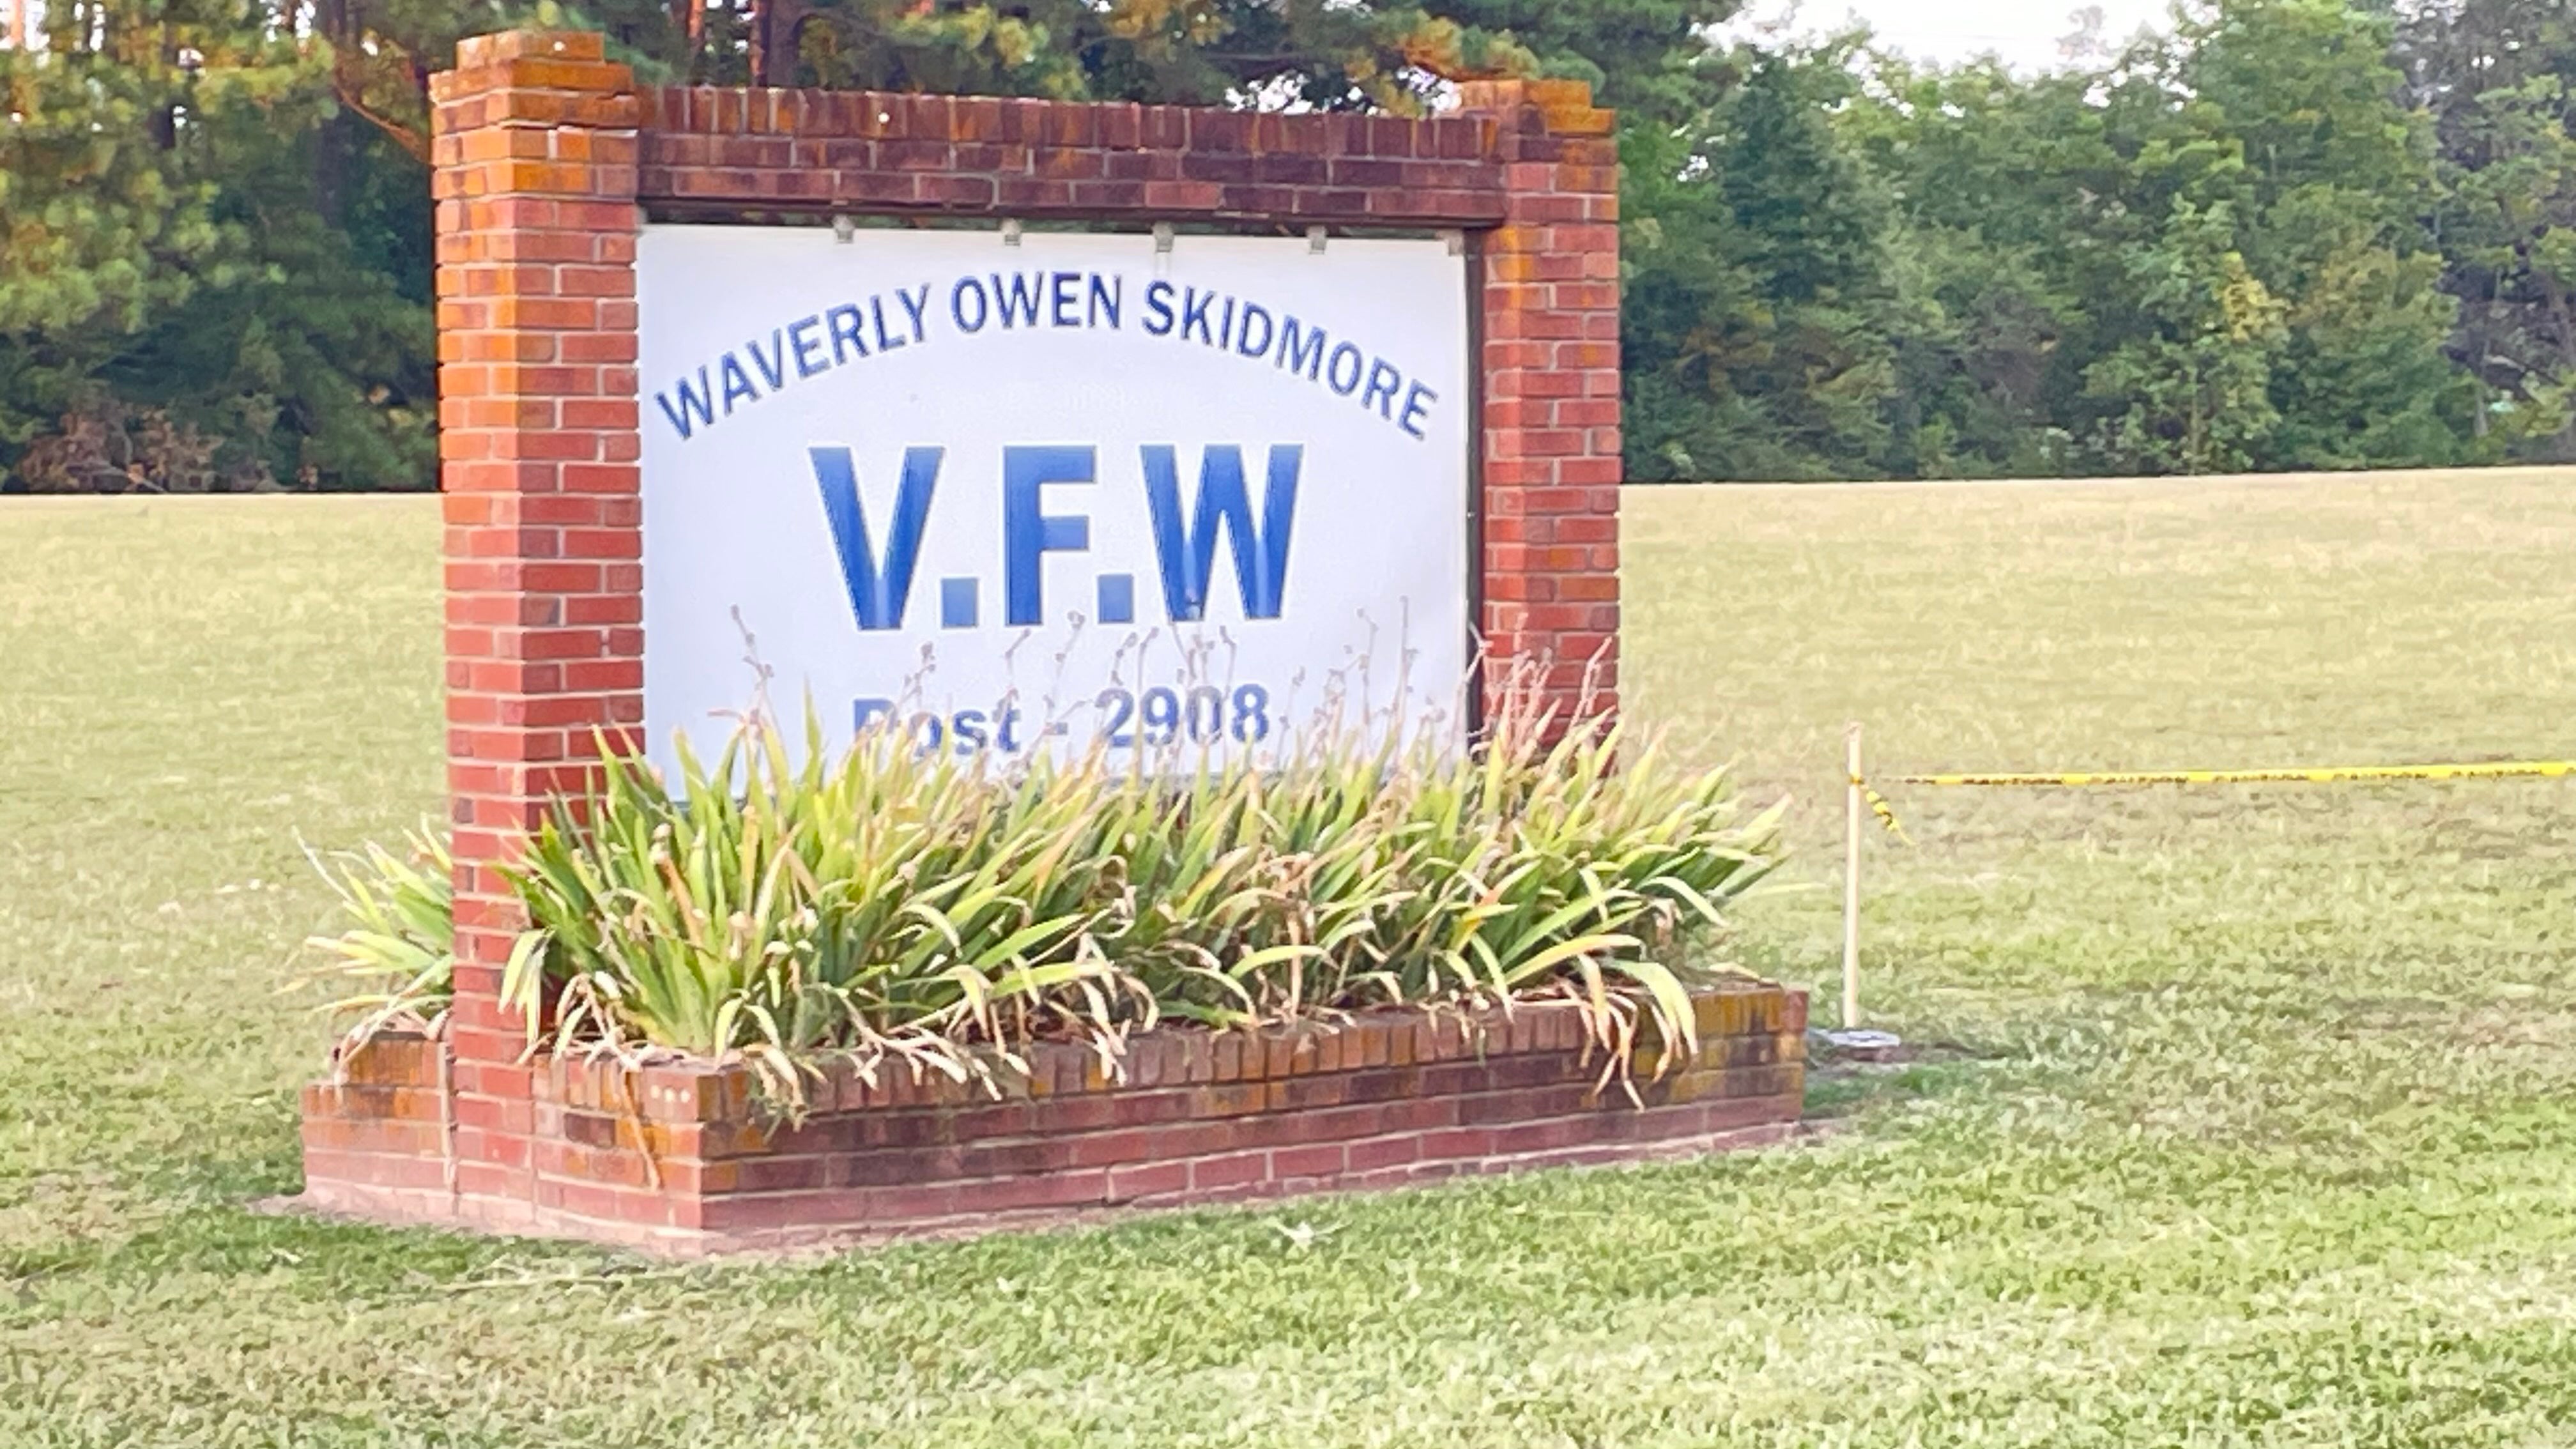 The Waverly Owen Skidmore VFW Post 2908 is under investigation.